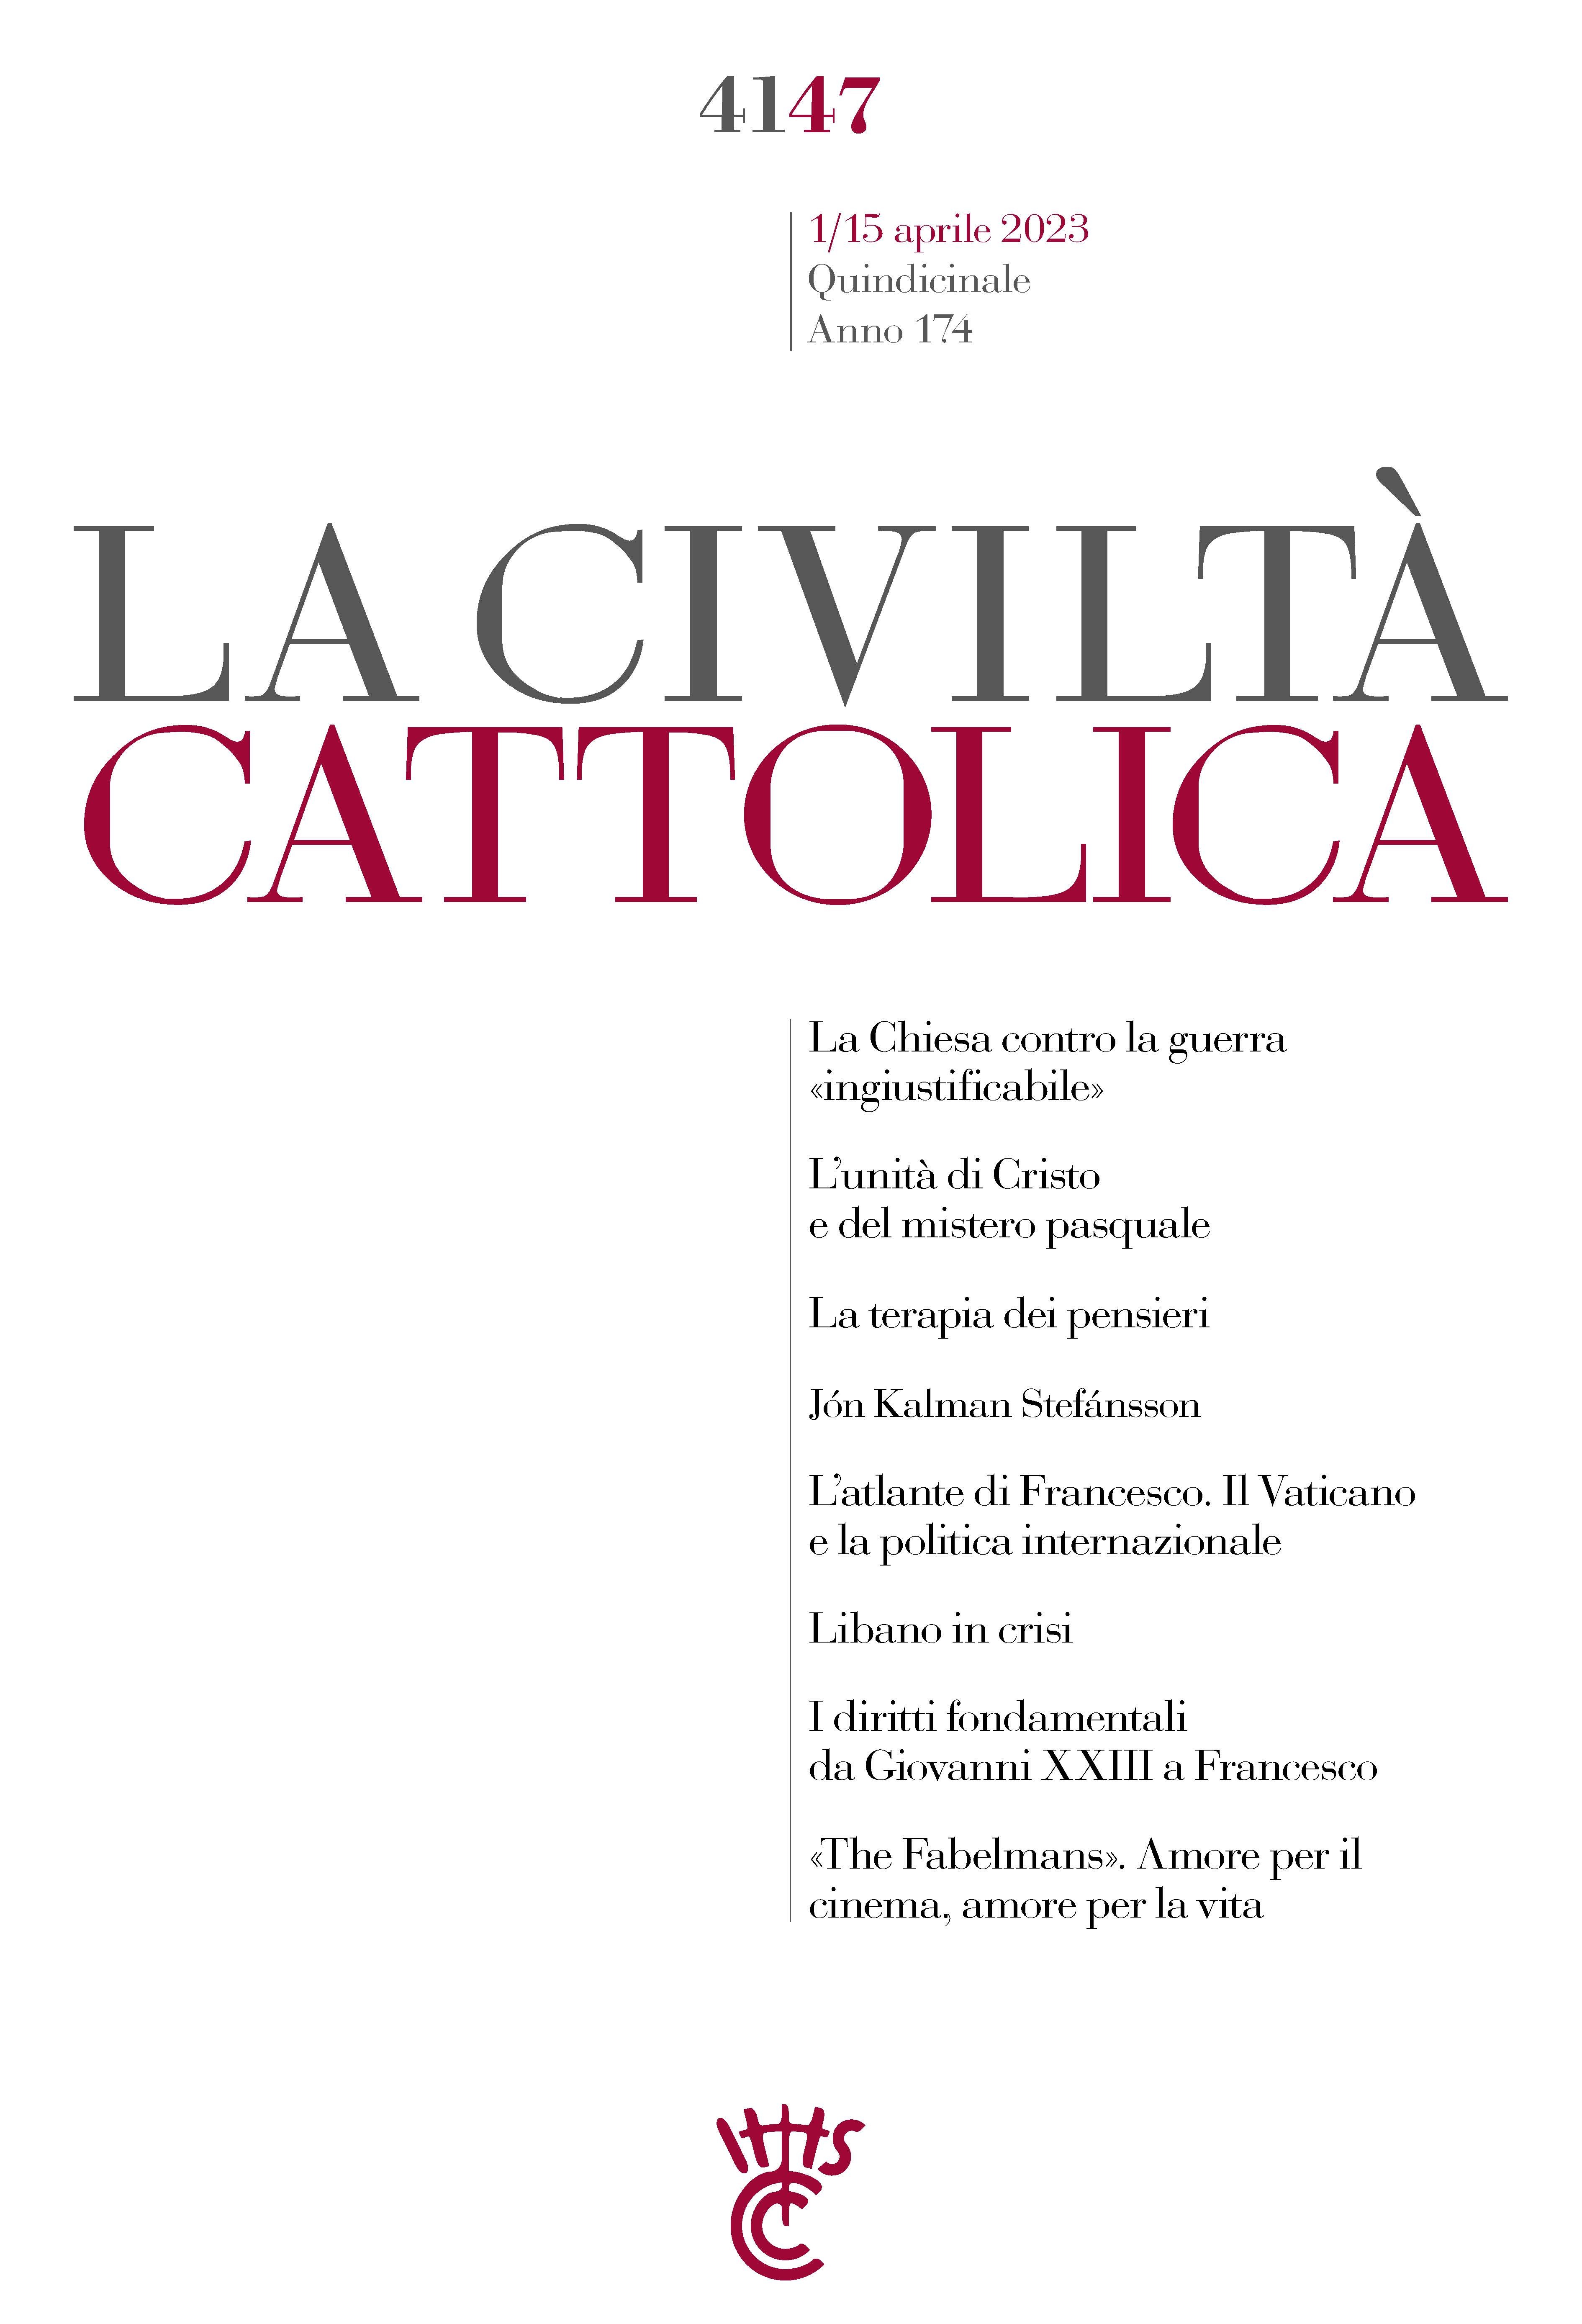 La Civiltà Cattolica n. 4147 - Librerie.coop